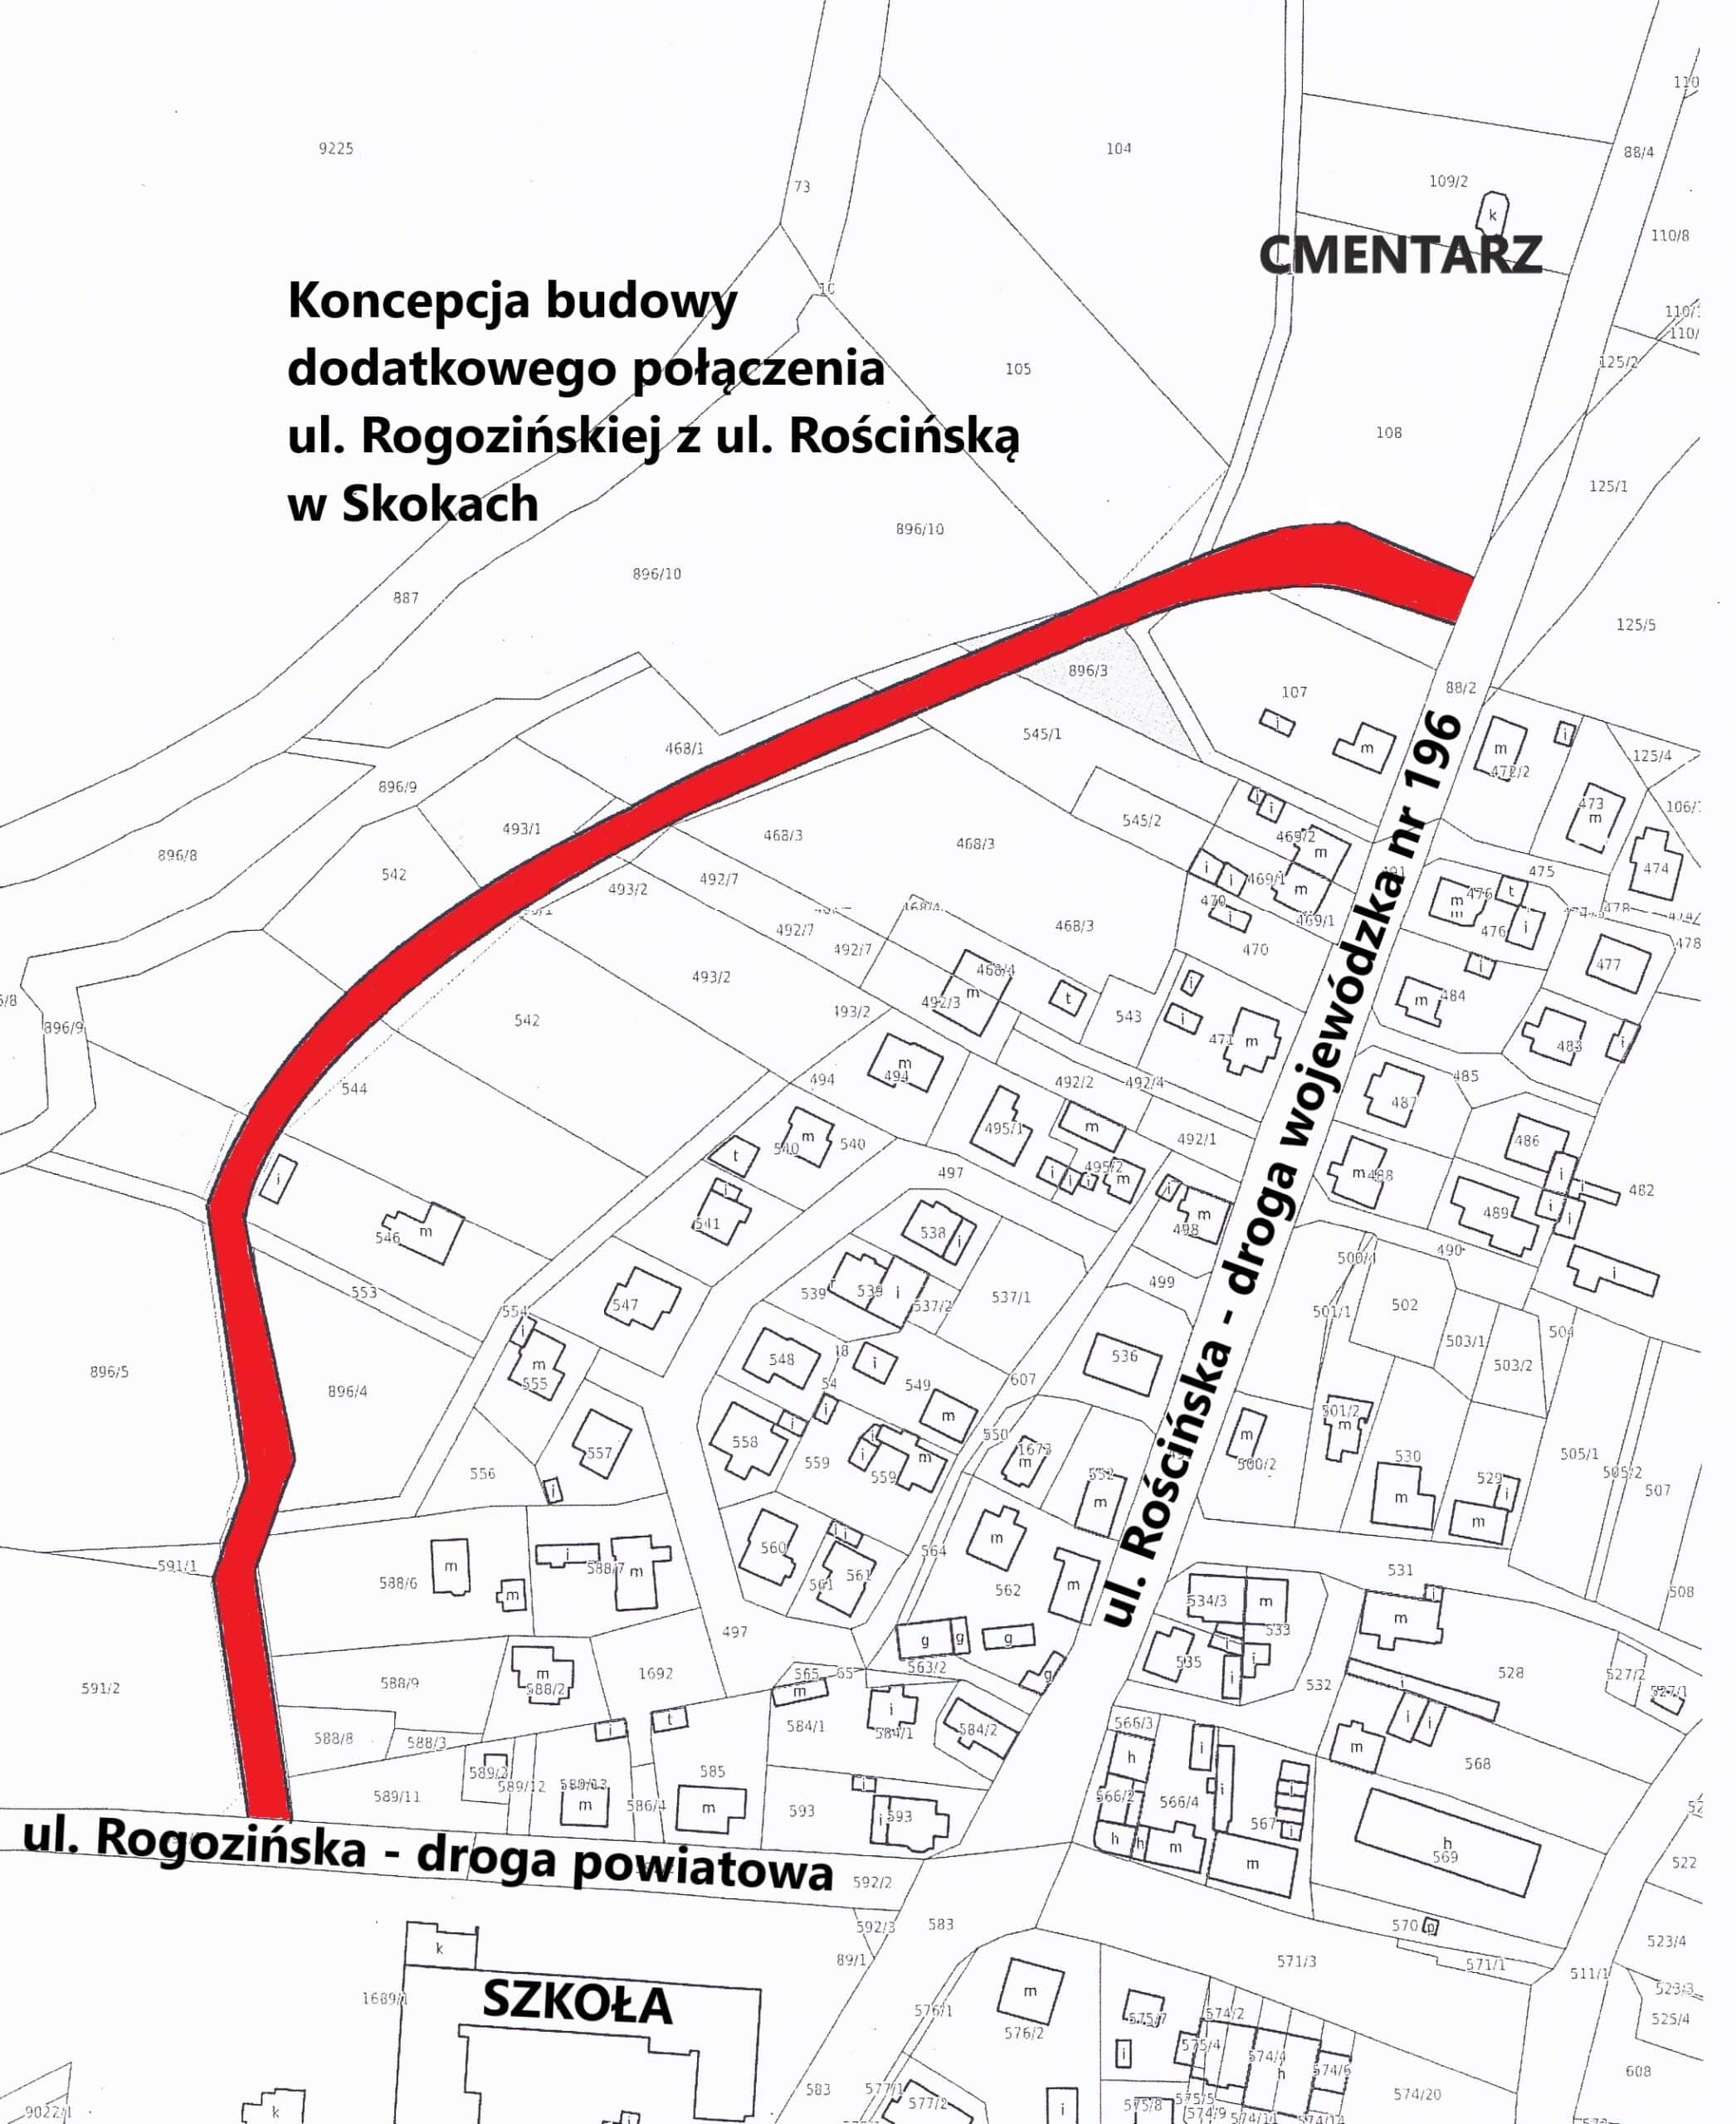 Koncepcja budowy dodatkowego połączenia ul. Rogozińskiej z ul. Rościńską w Skokach 